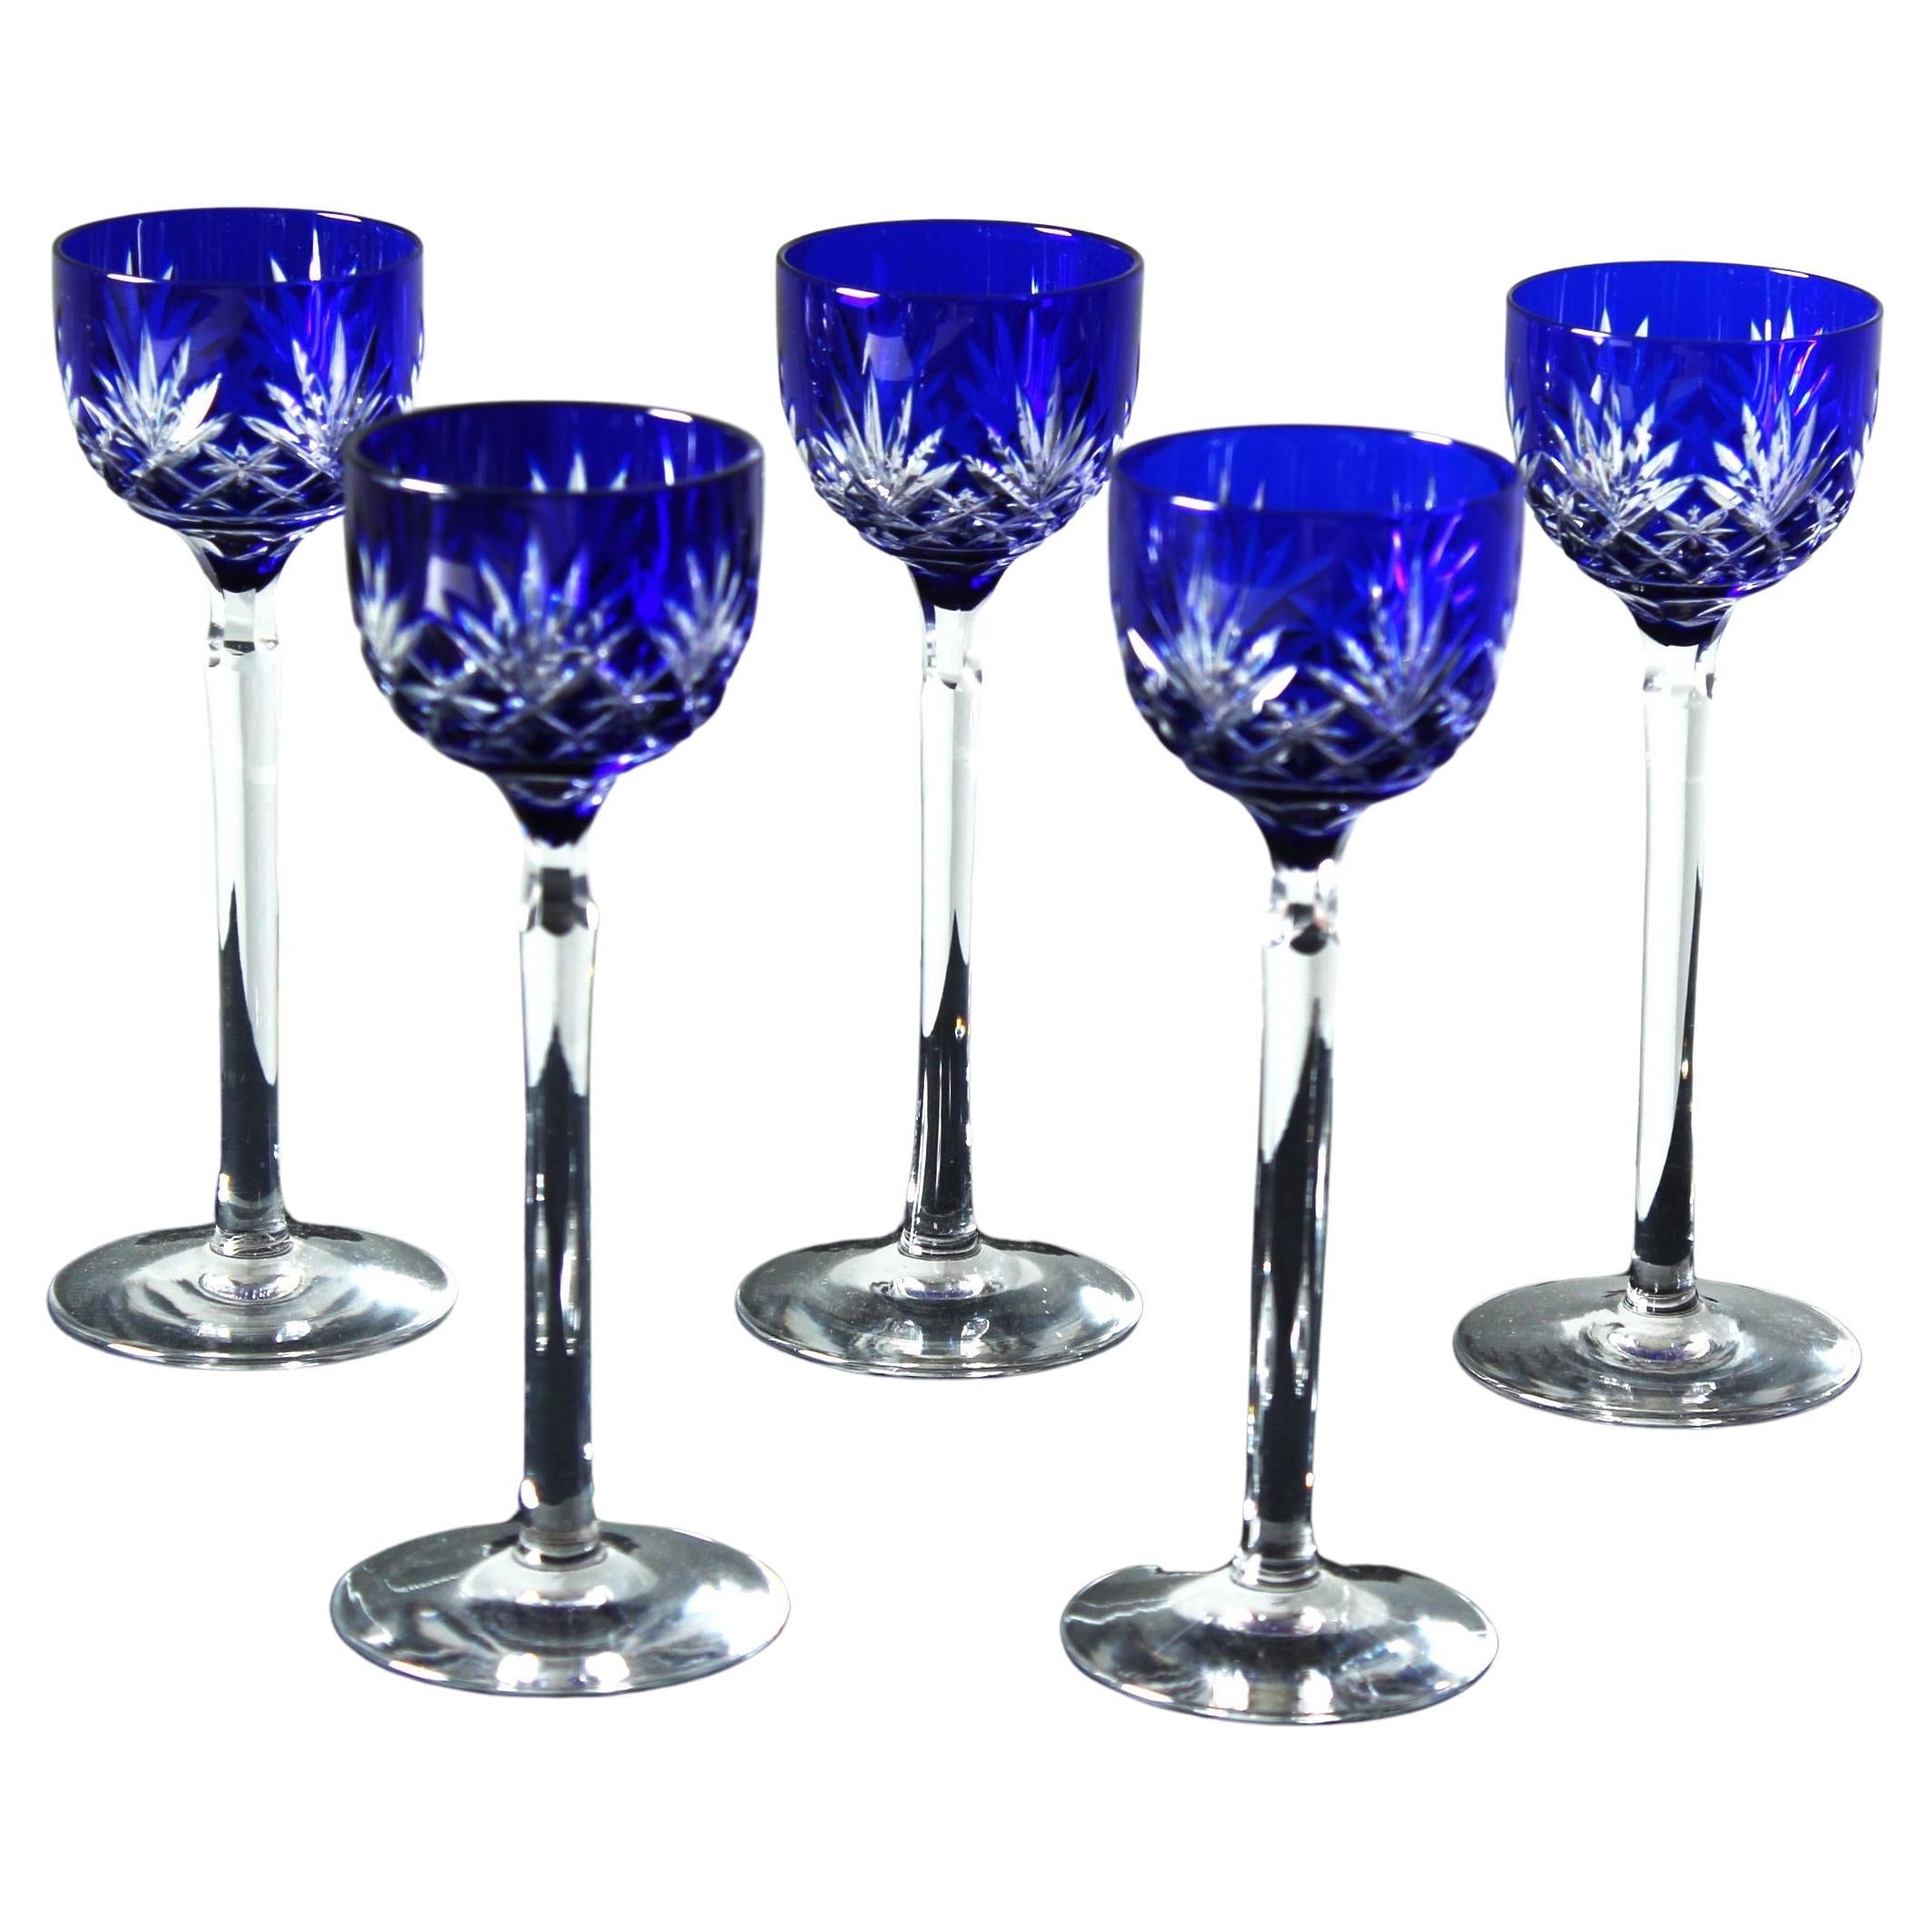 Ensemble de 5 verres à liqueur bleu royal, années 1880, France, verre cristal